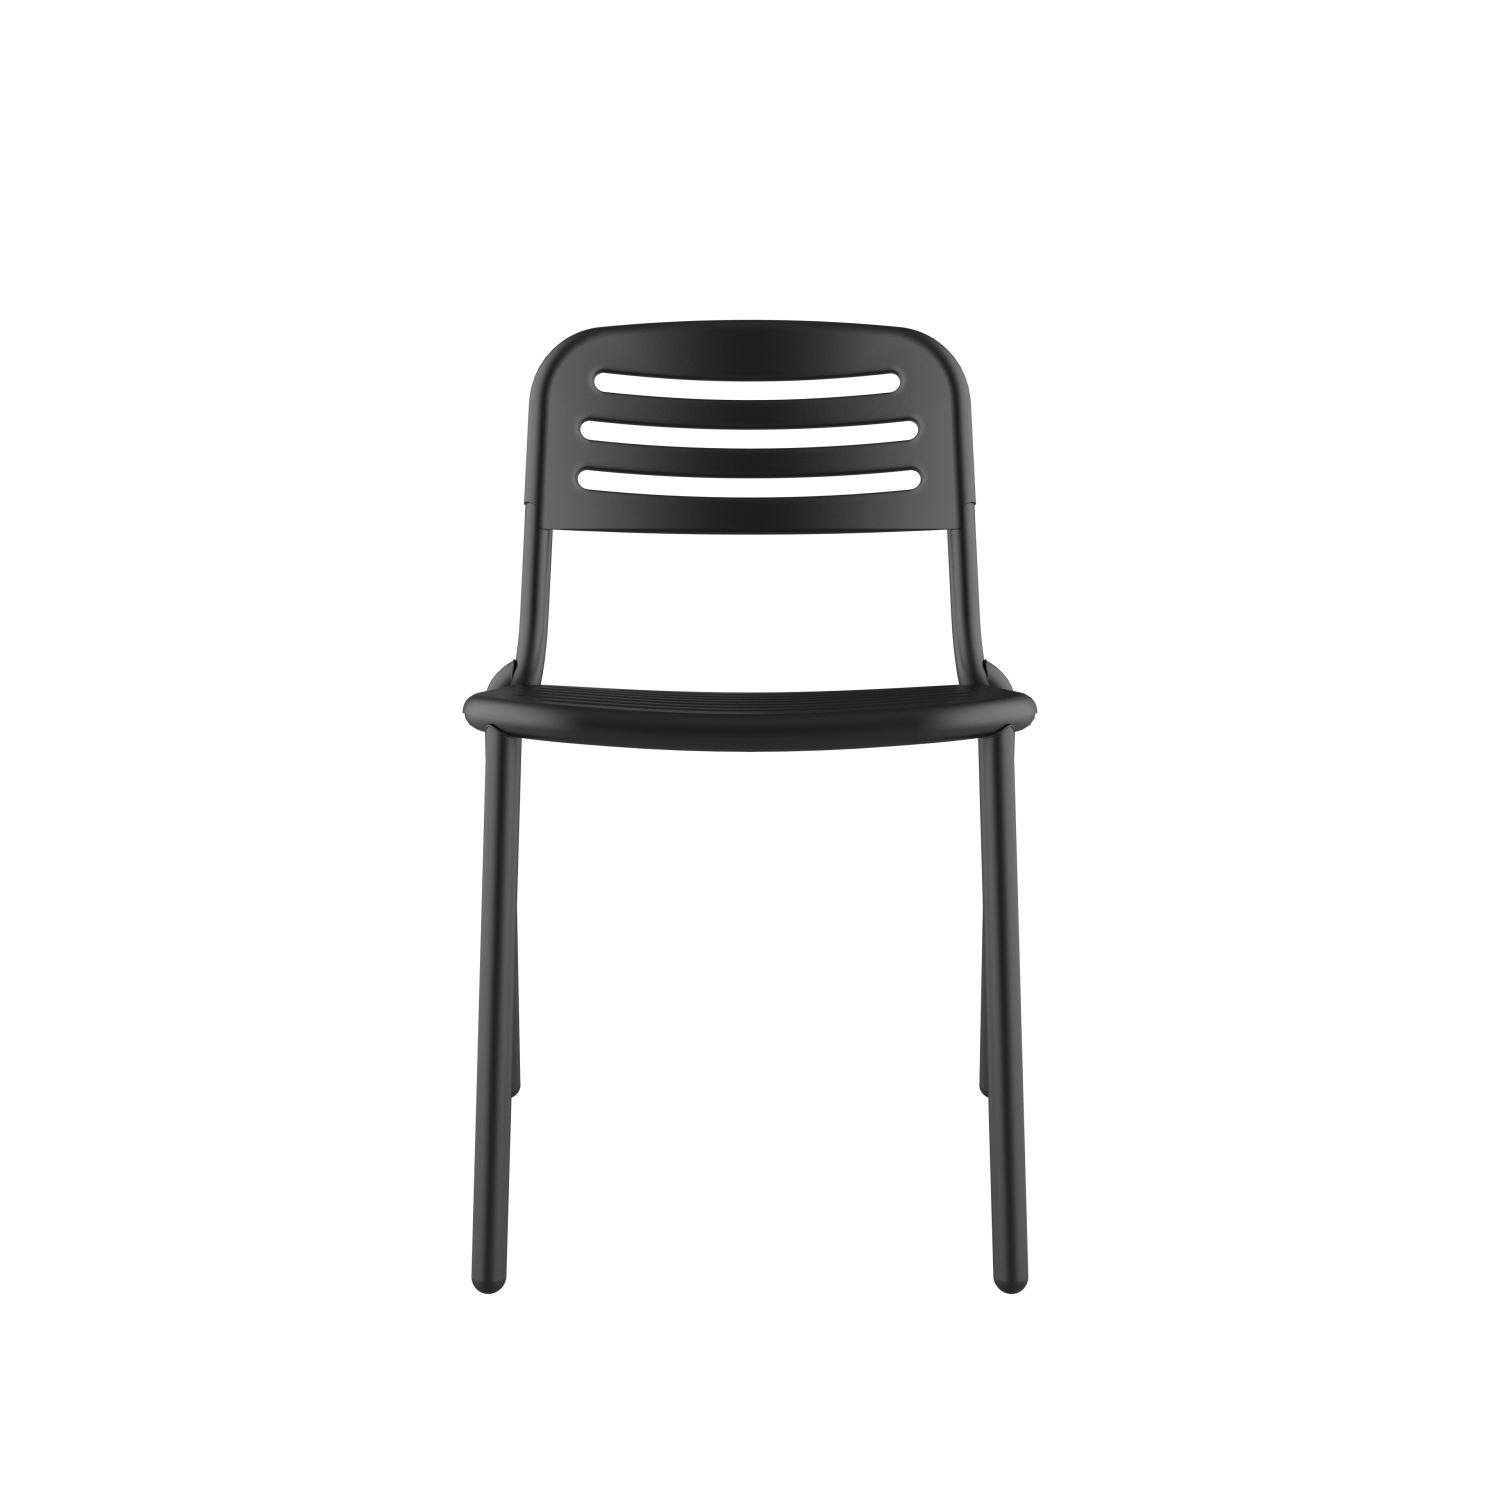 lensvelt studio stefan scholten loop chair stackable no armrests with perforation black ral9005